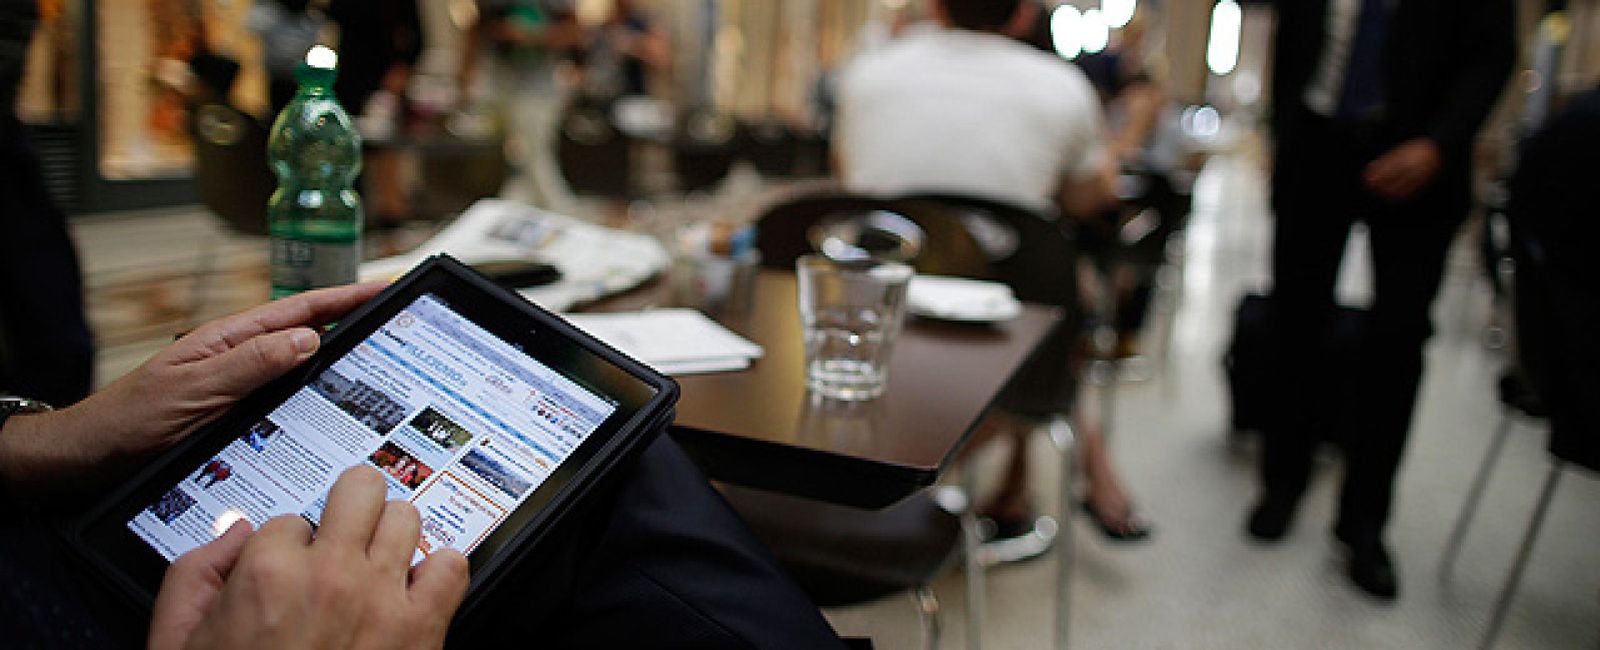 Foto: El iPad mini monopolizará aún más el mercado de las tabletas